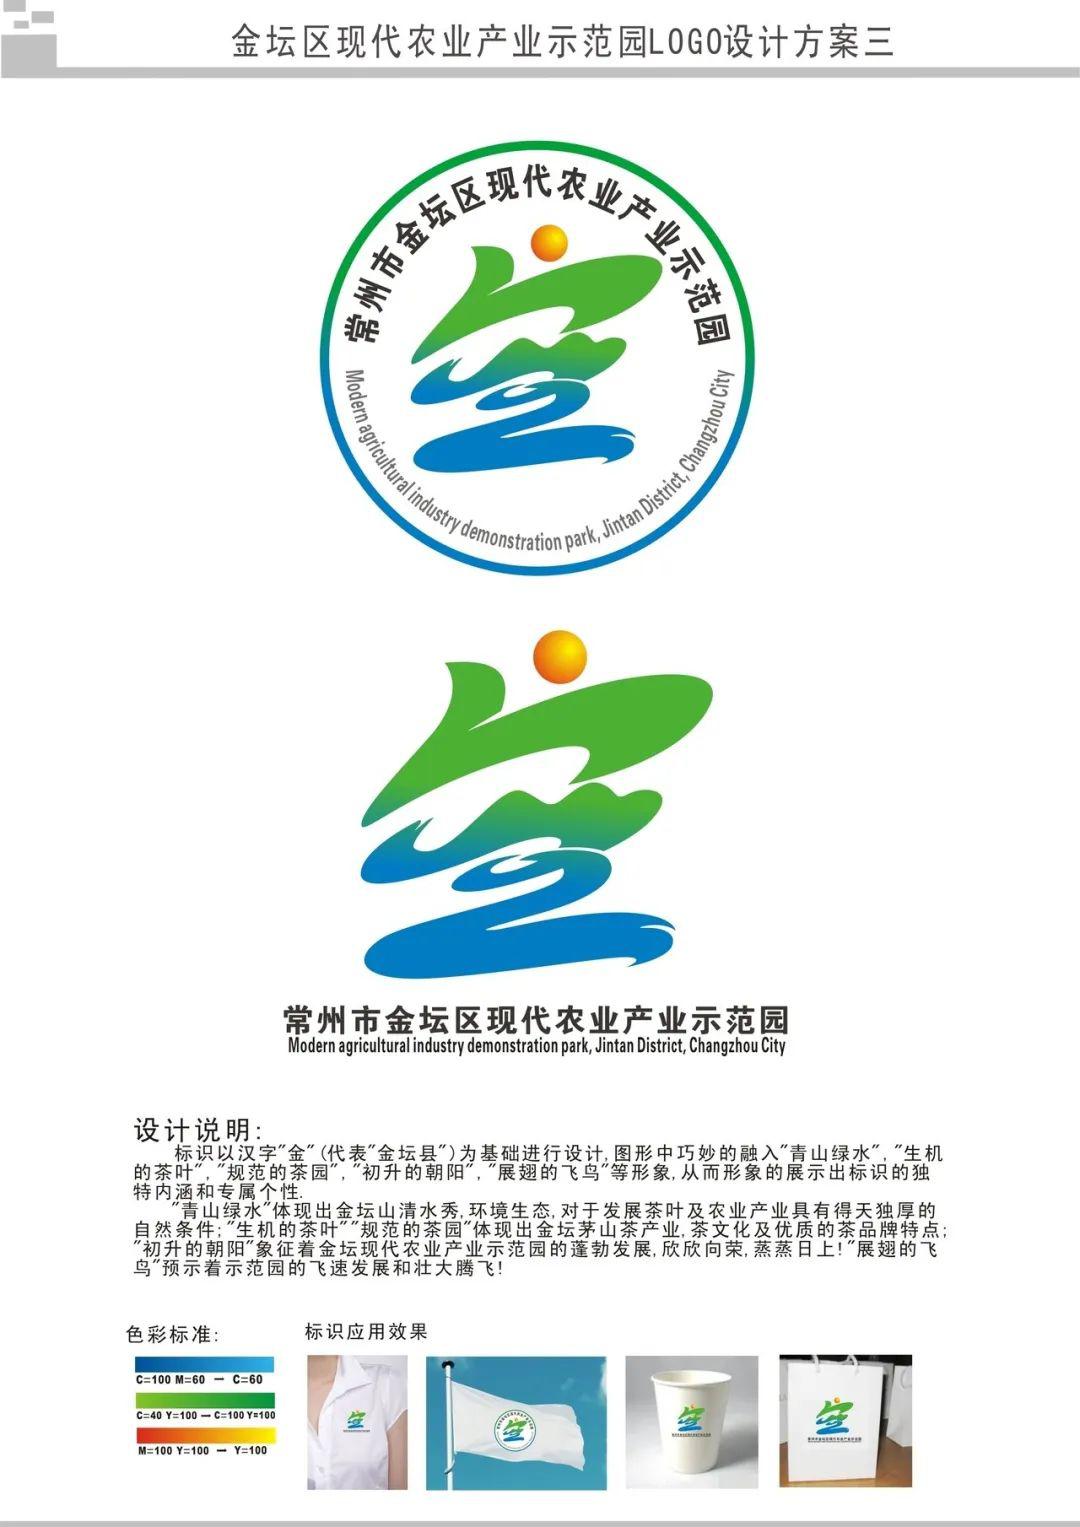 现代农业logo设计图片